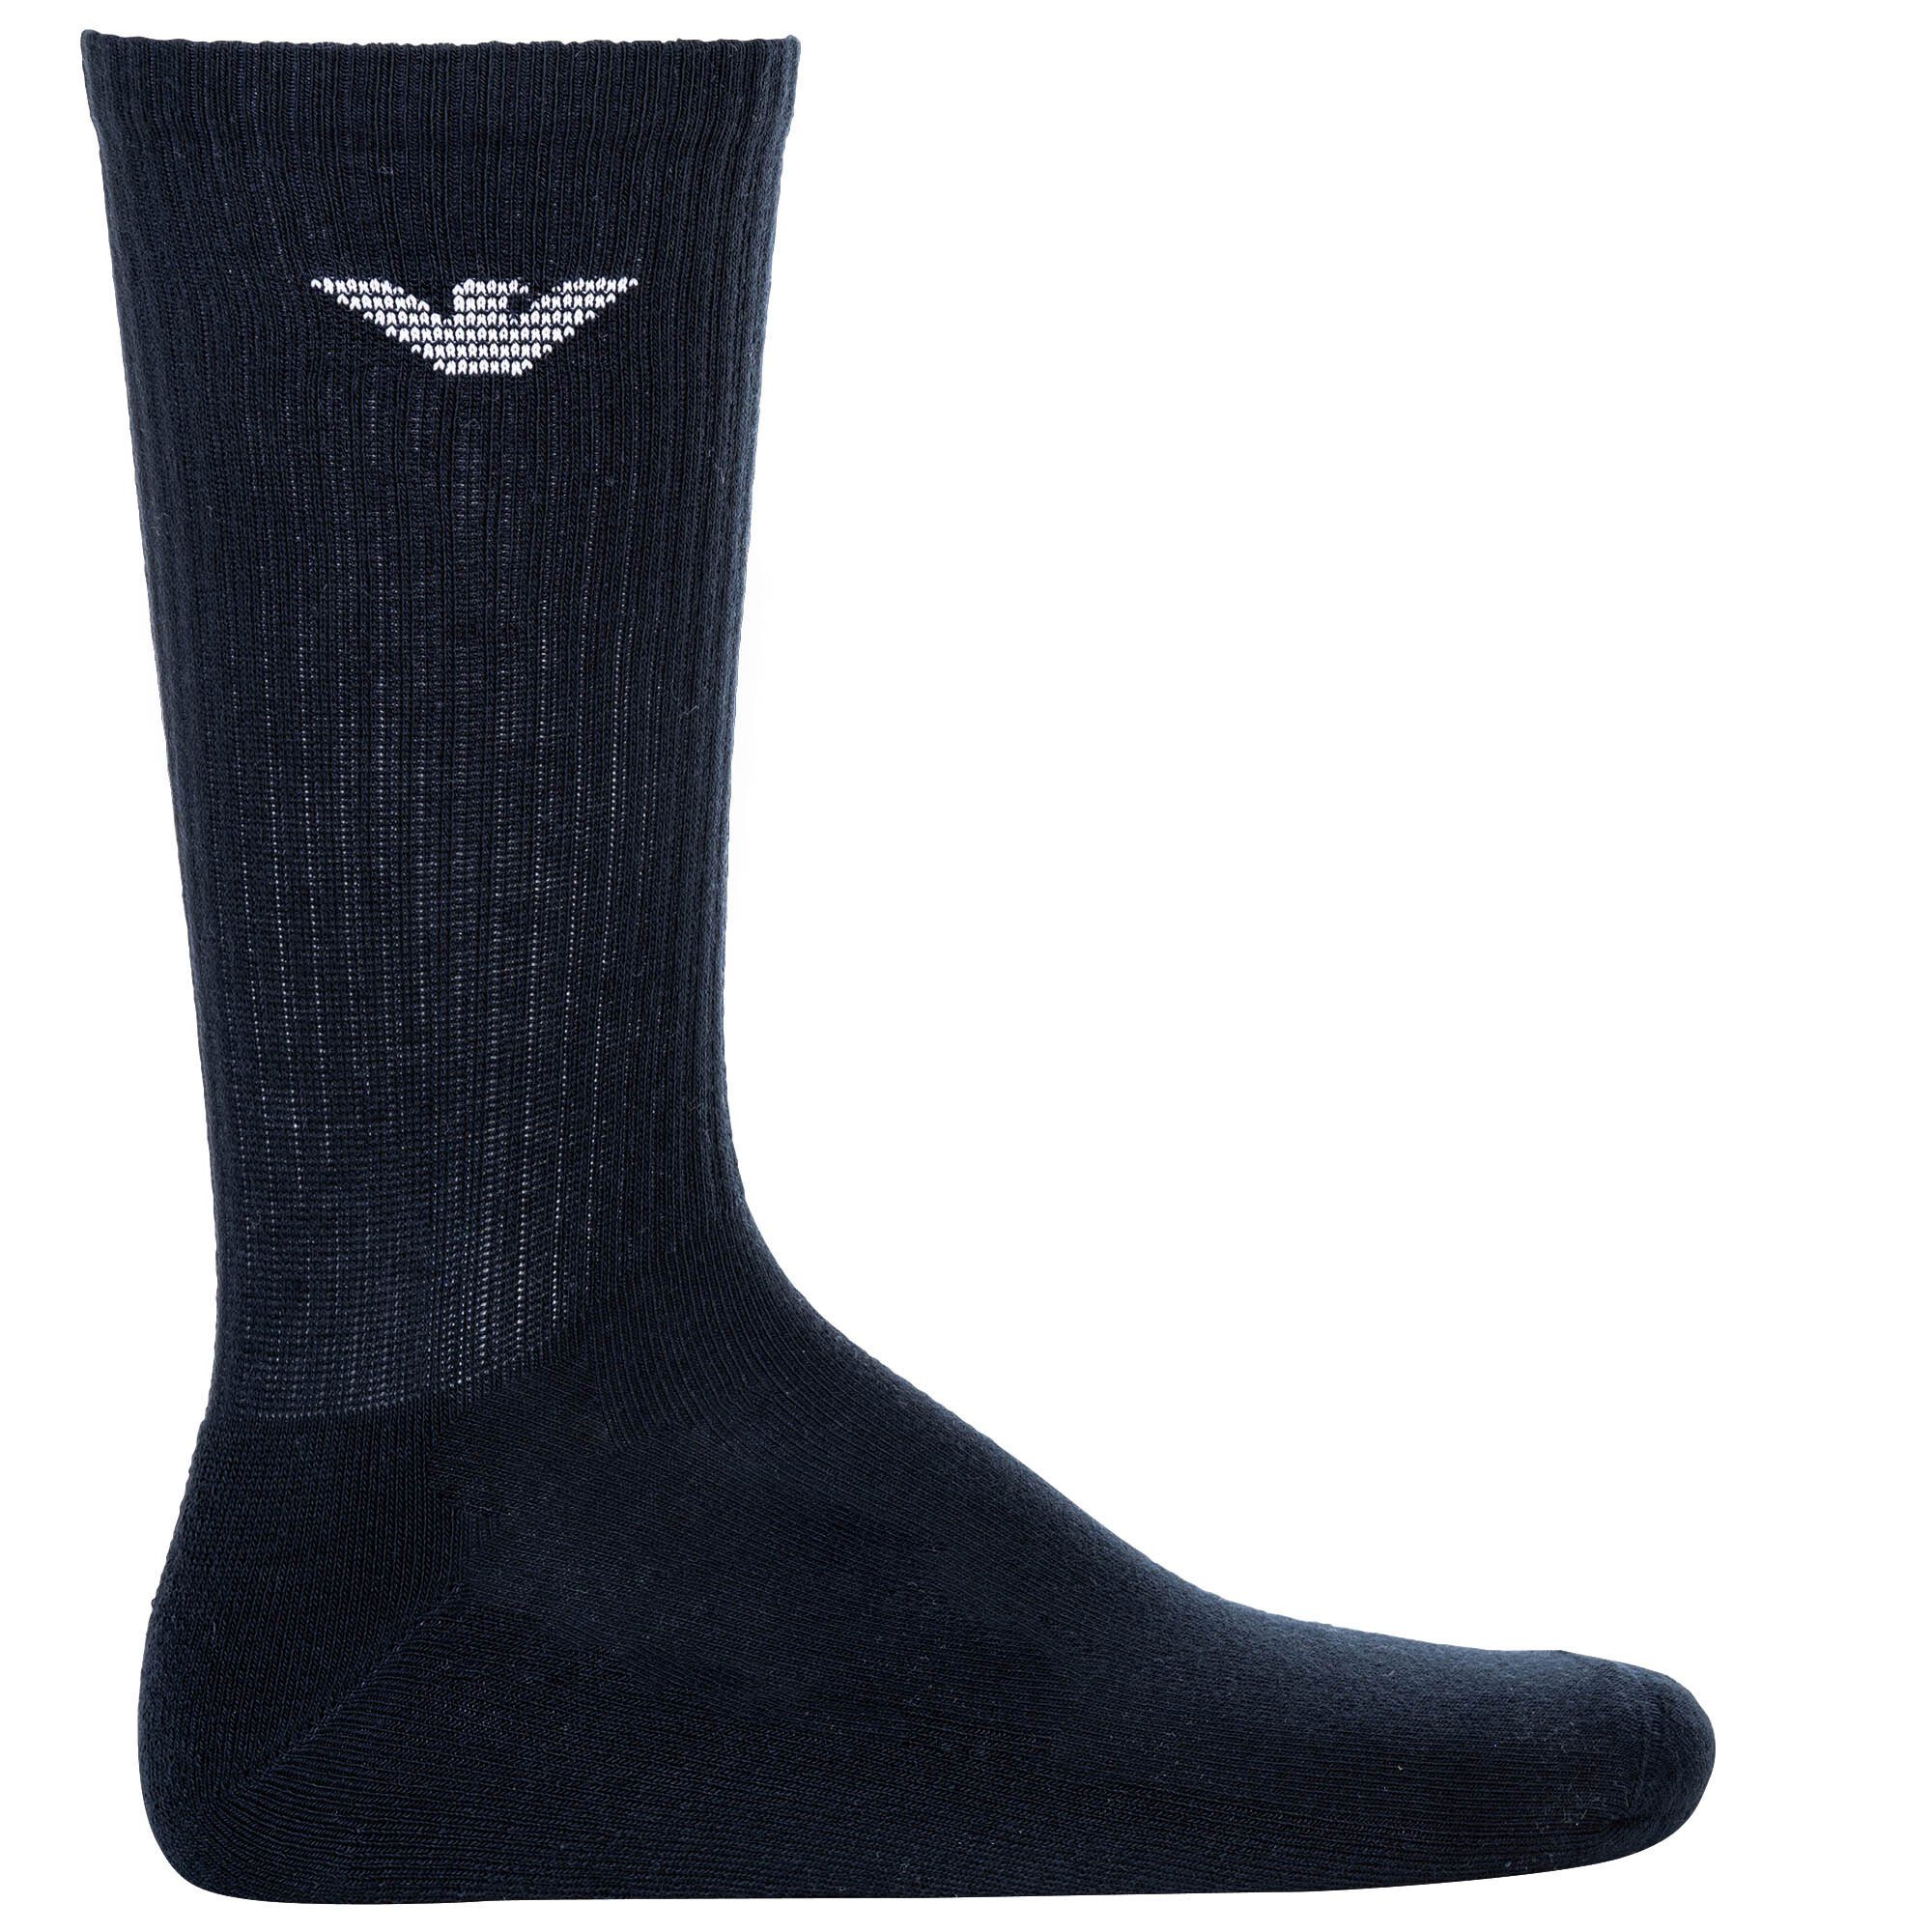 Mehrfarbig Socken, Sporty Medium Armani Emporio Socks 3er Pack Sportsocken Herren -